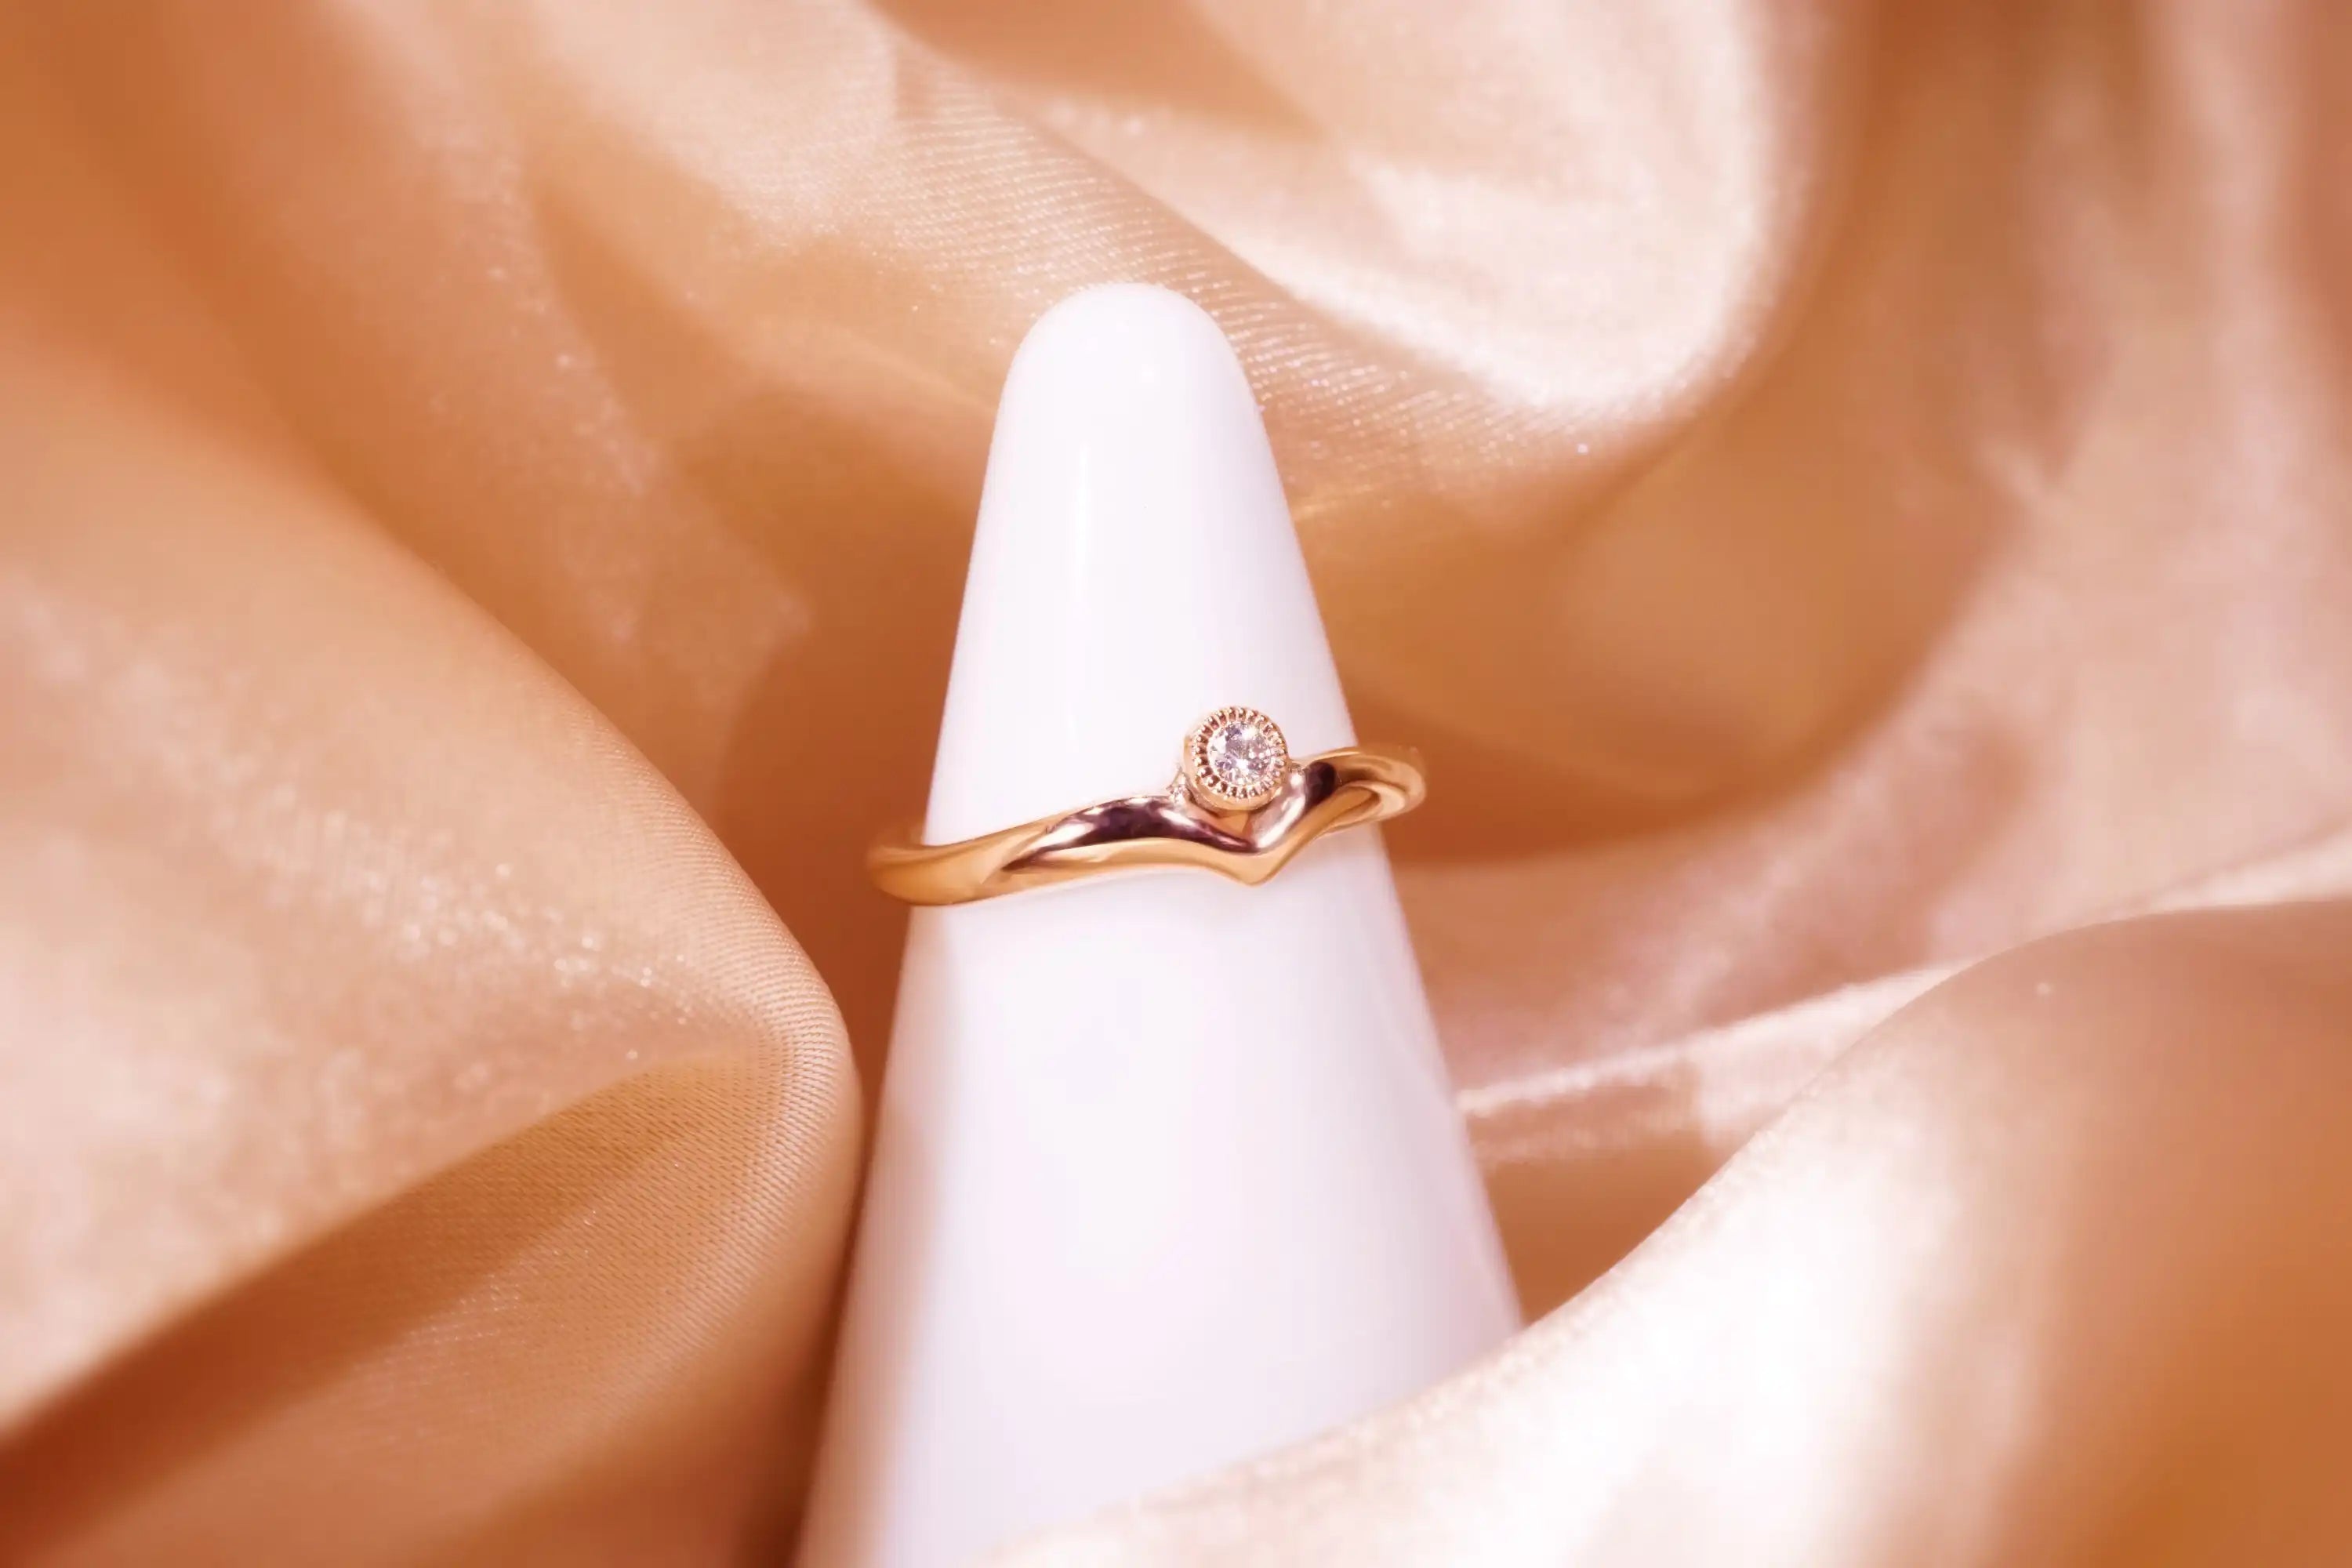 Chia Jewelry訂製k金鑽石婚戒求婚戒，以微笑為主題的優雅婚戒設計